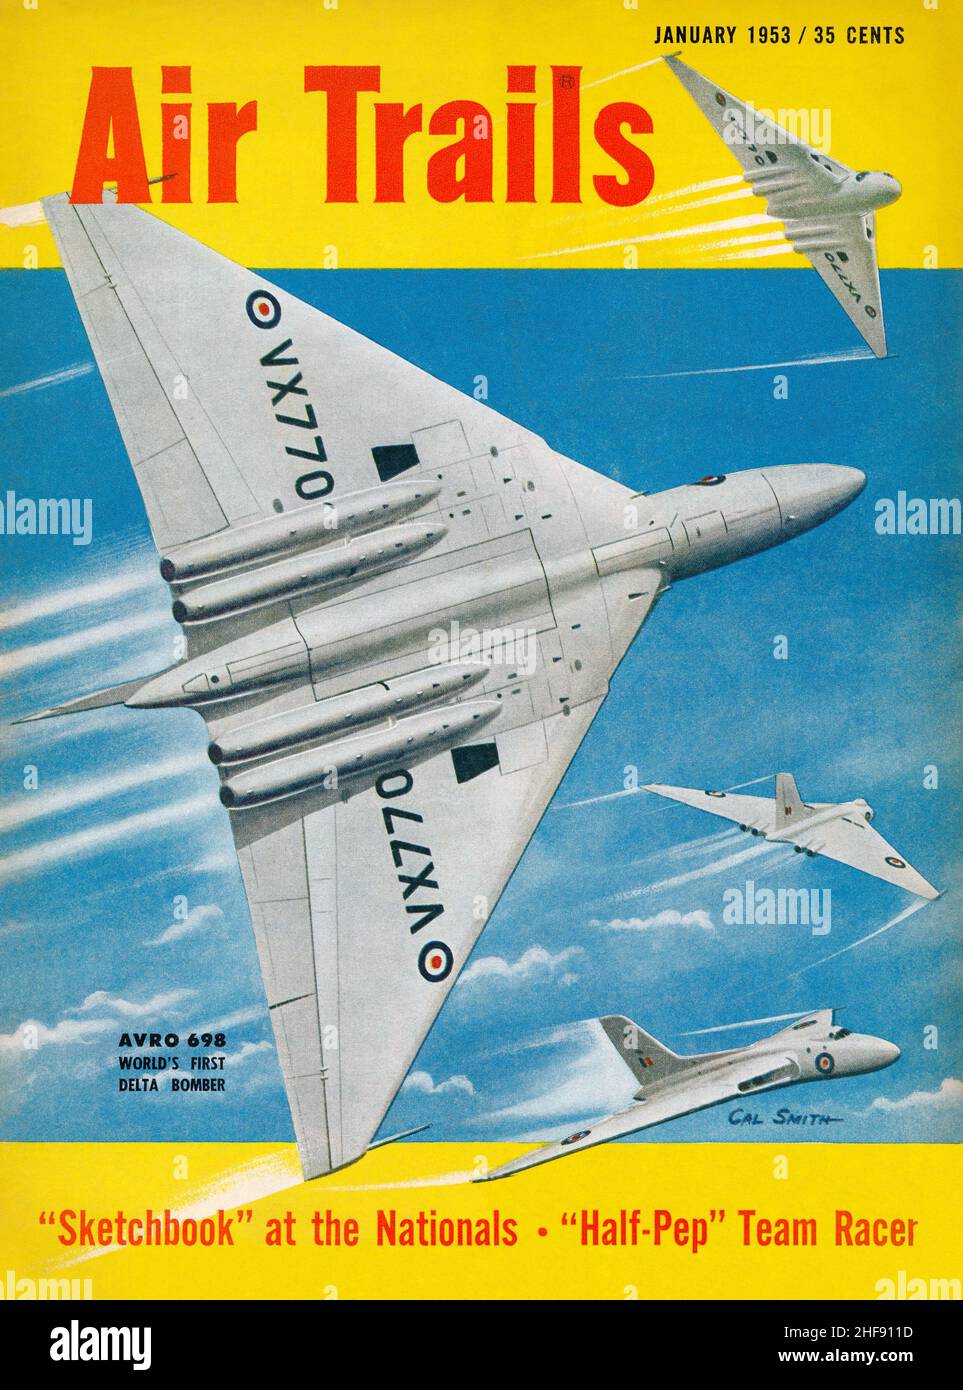 Vintage Frontcover des Air Trails Magazins für Januar 1953, mit einer Illustration der Afro Vulcan Bomber von S. Calhoun Smith. Stockfoto